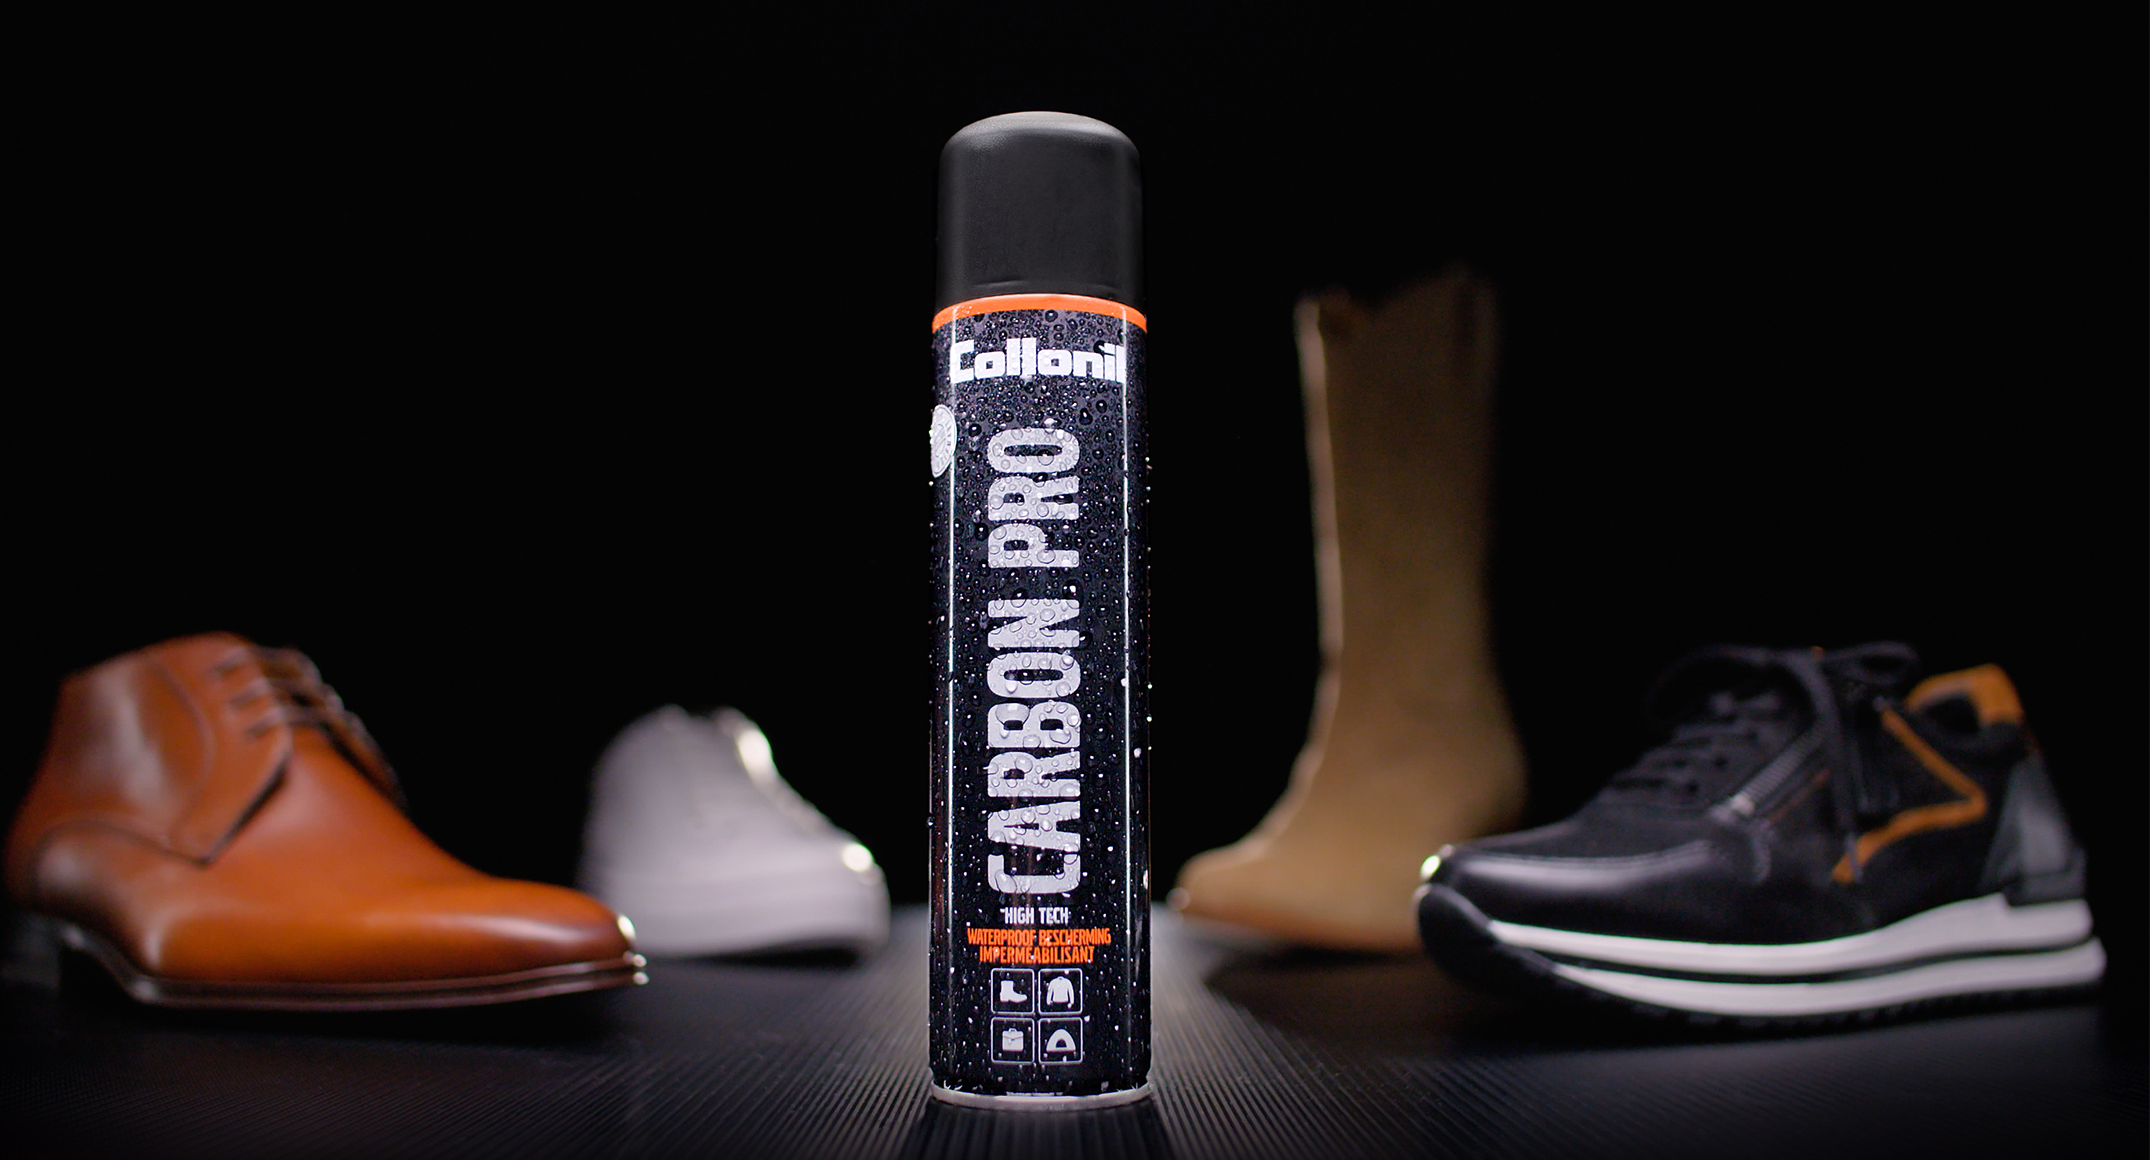 Collonil houdt schoenen duurzaam met de Carbon Pro spray! 